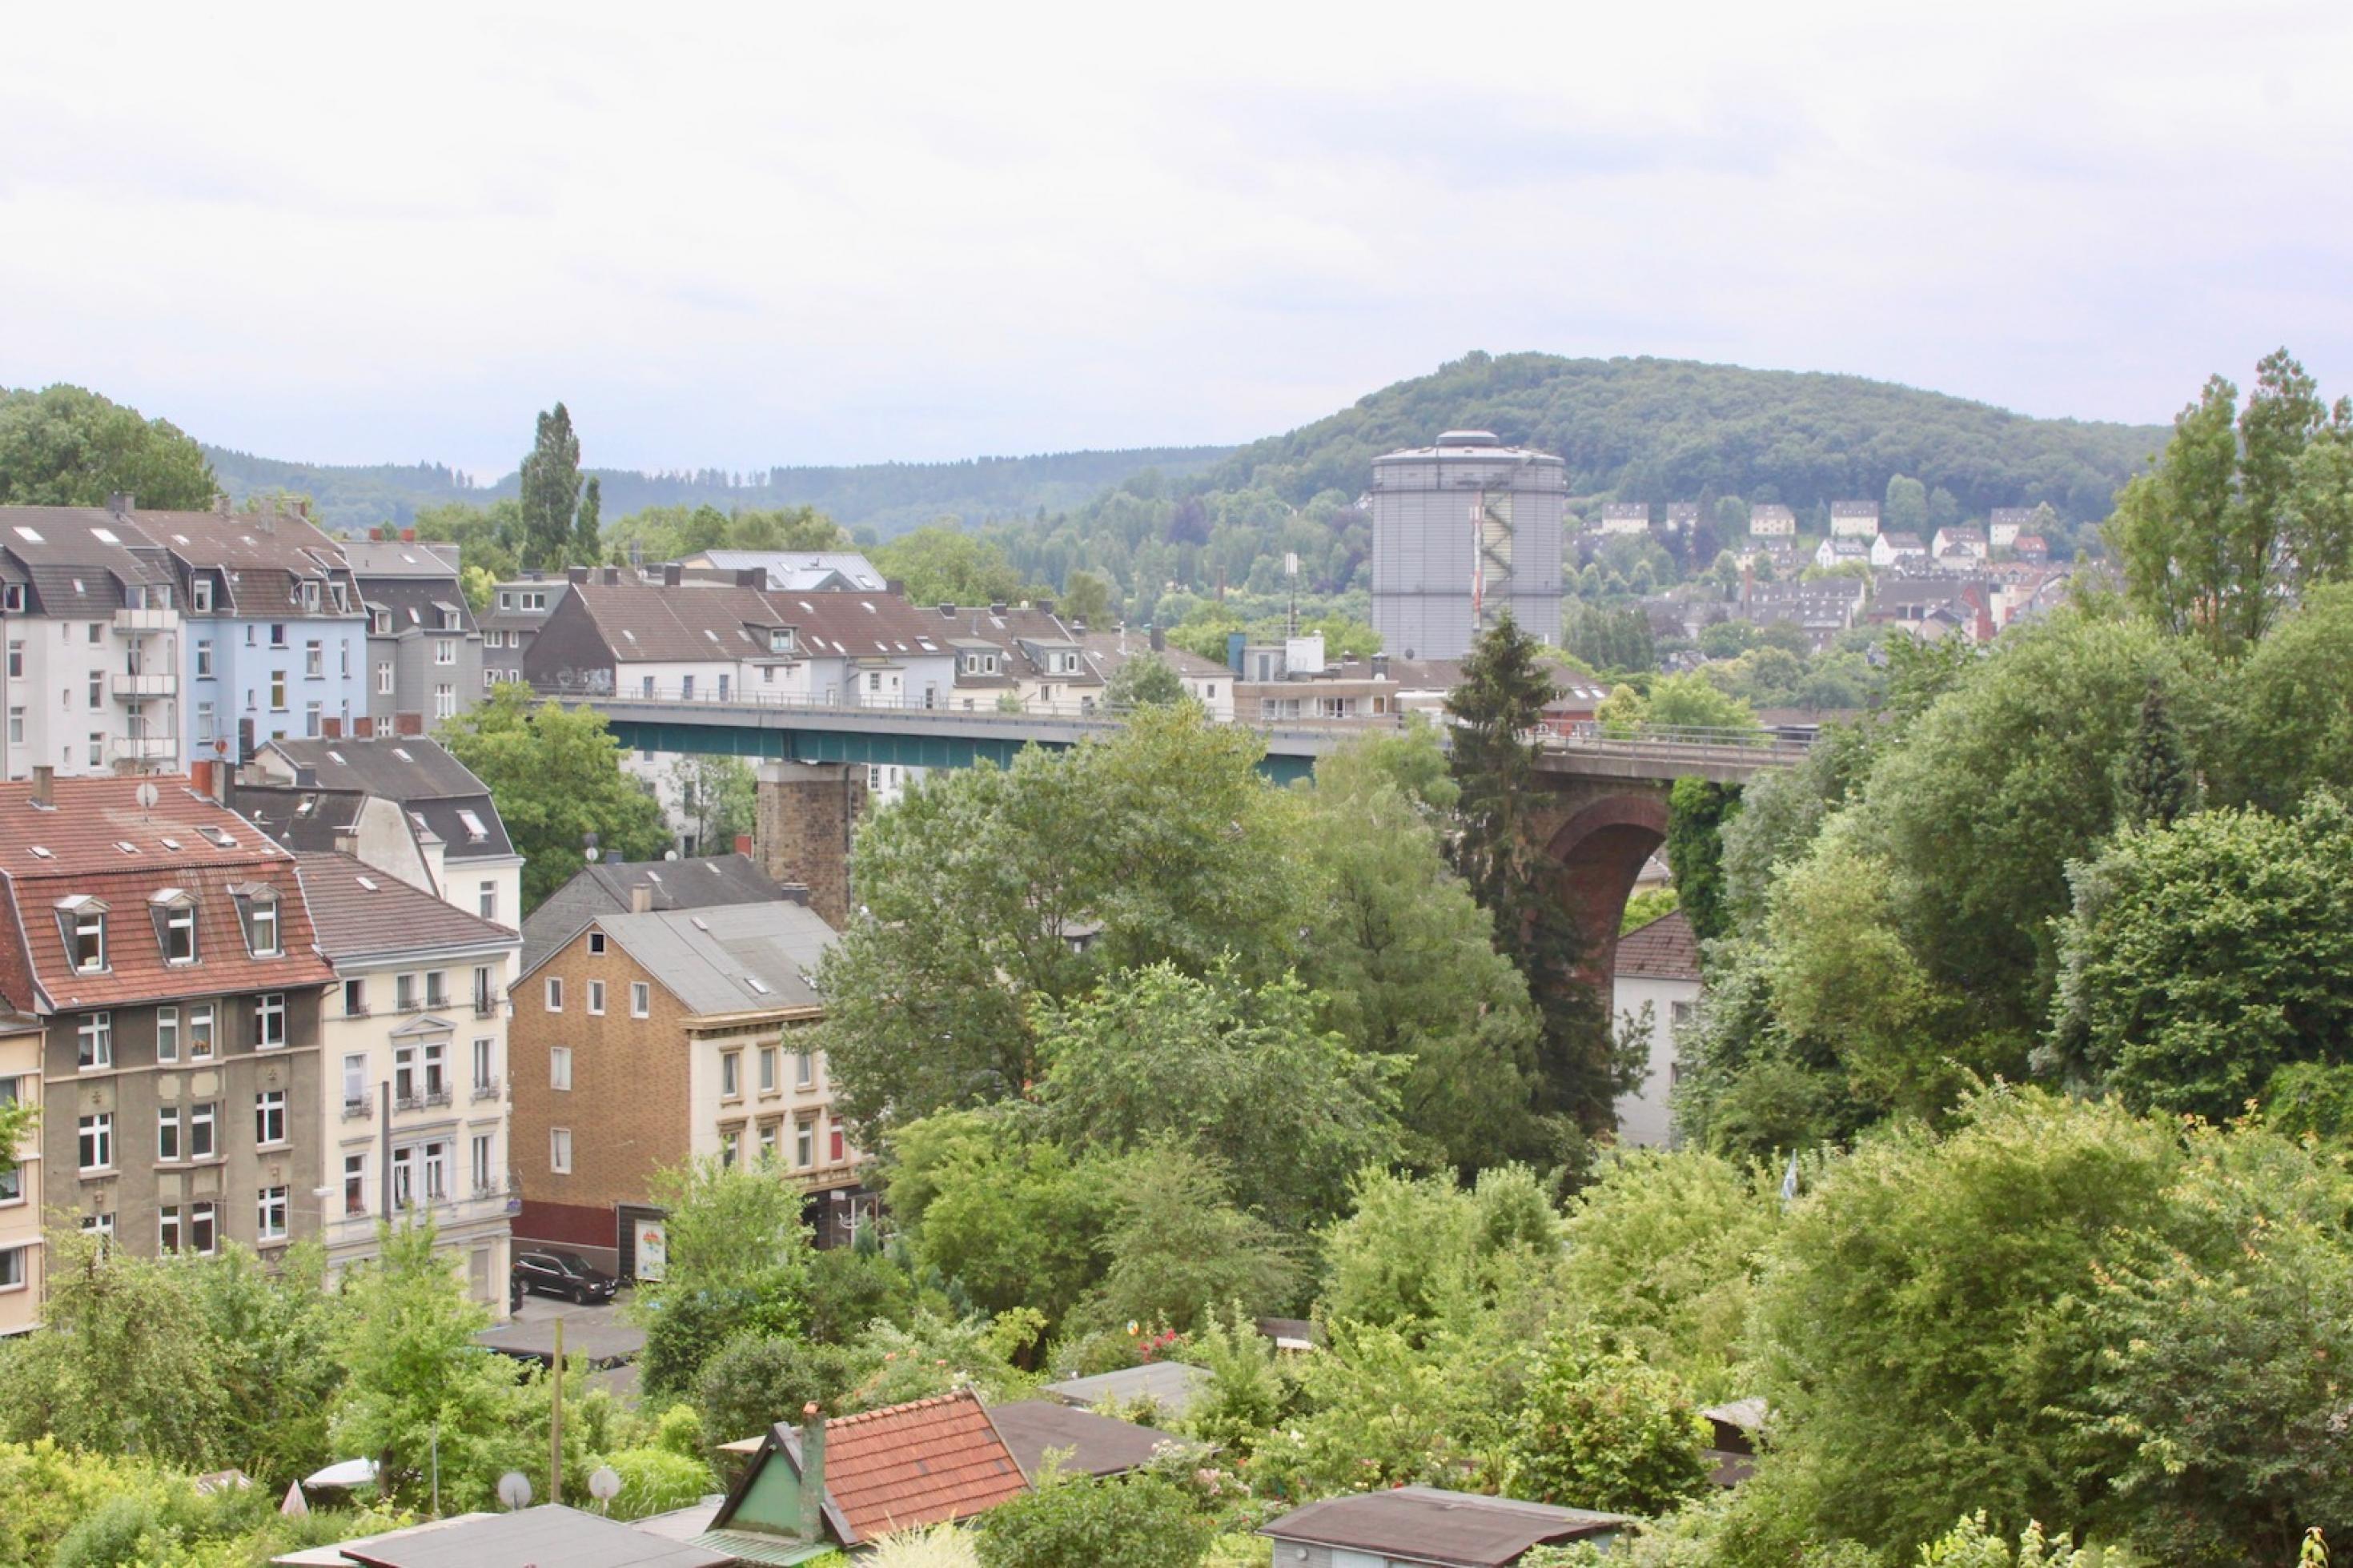 Blick auf Wuppertal von einem hohen Punkt: Neben Häusern sind vor allem grüne Bäume zu sehen.